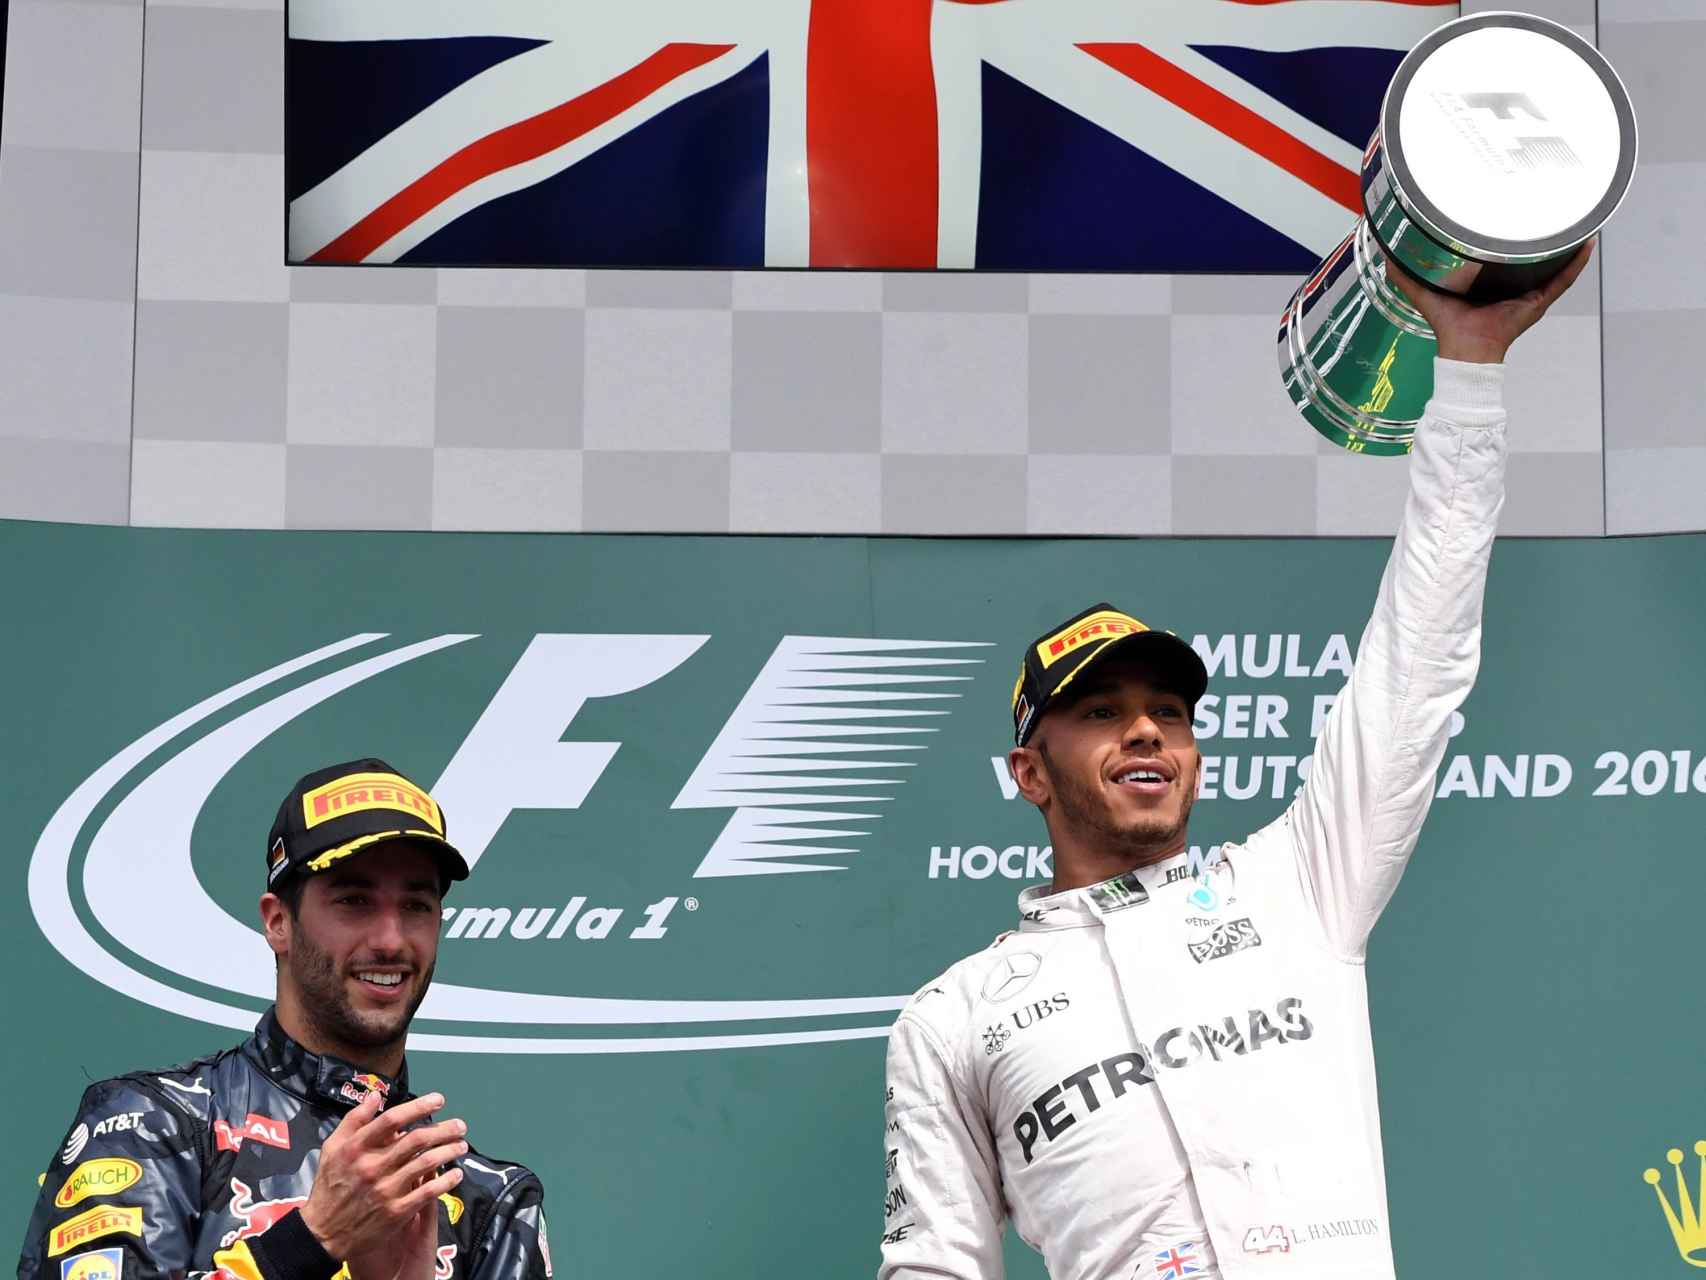 Hamilton levanta el trofeo de vencedor en el podio escoltado por Ricciardo.